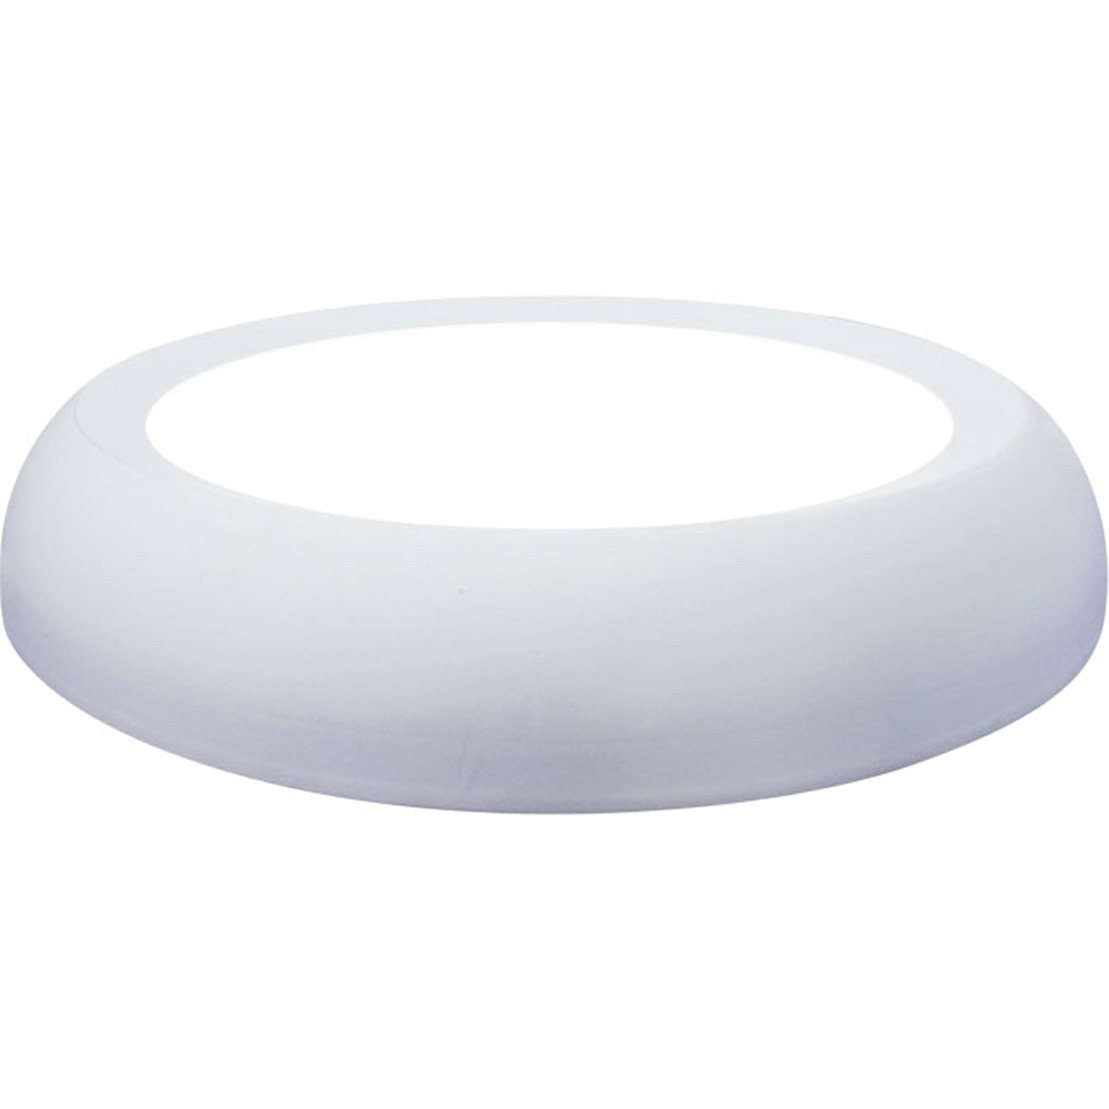 FocusLight SLIM LED - Ceiling light - White - Integrated LED - 15W LED (incl.)